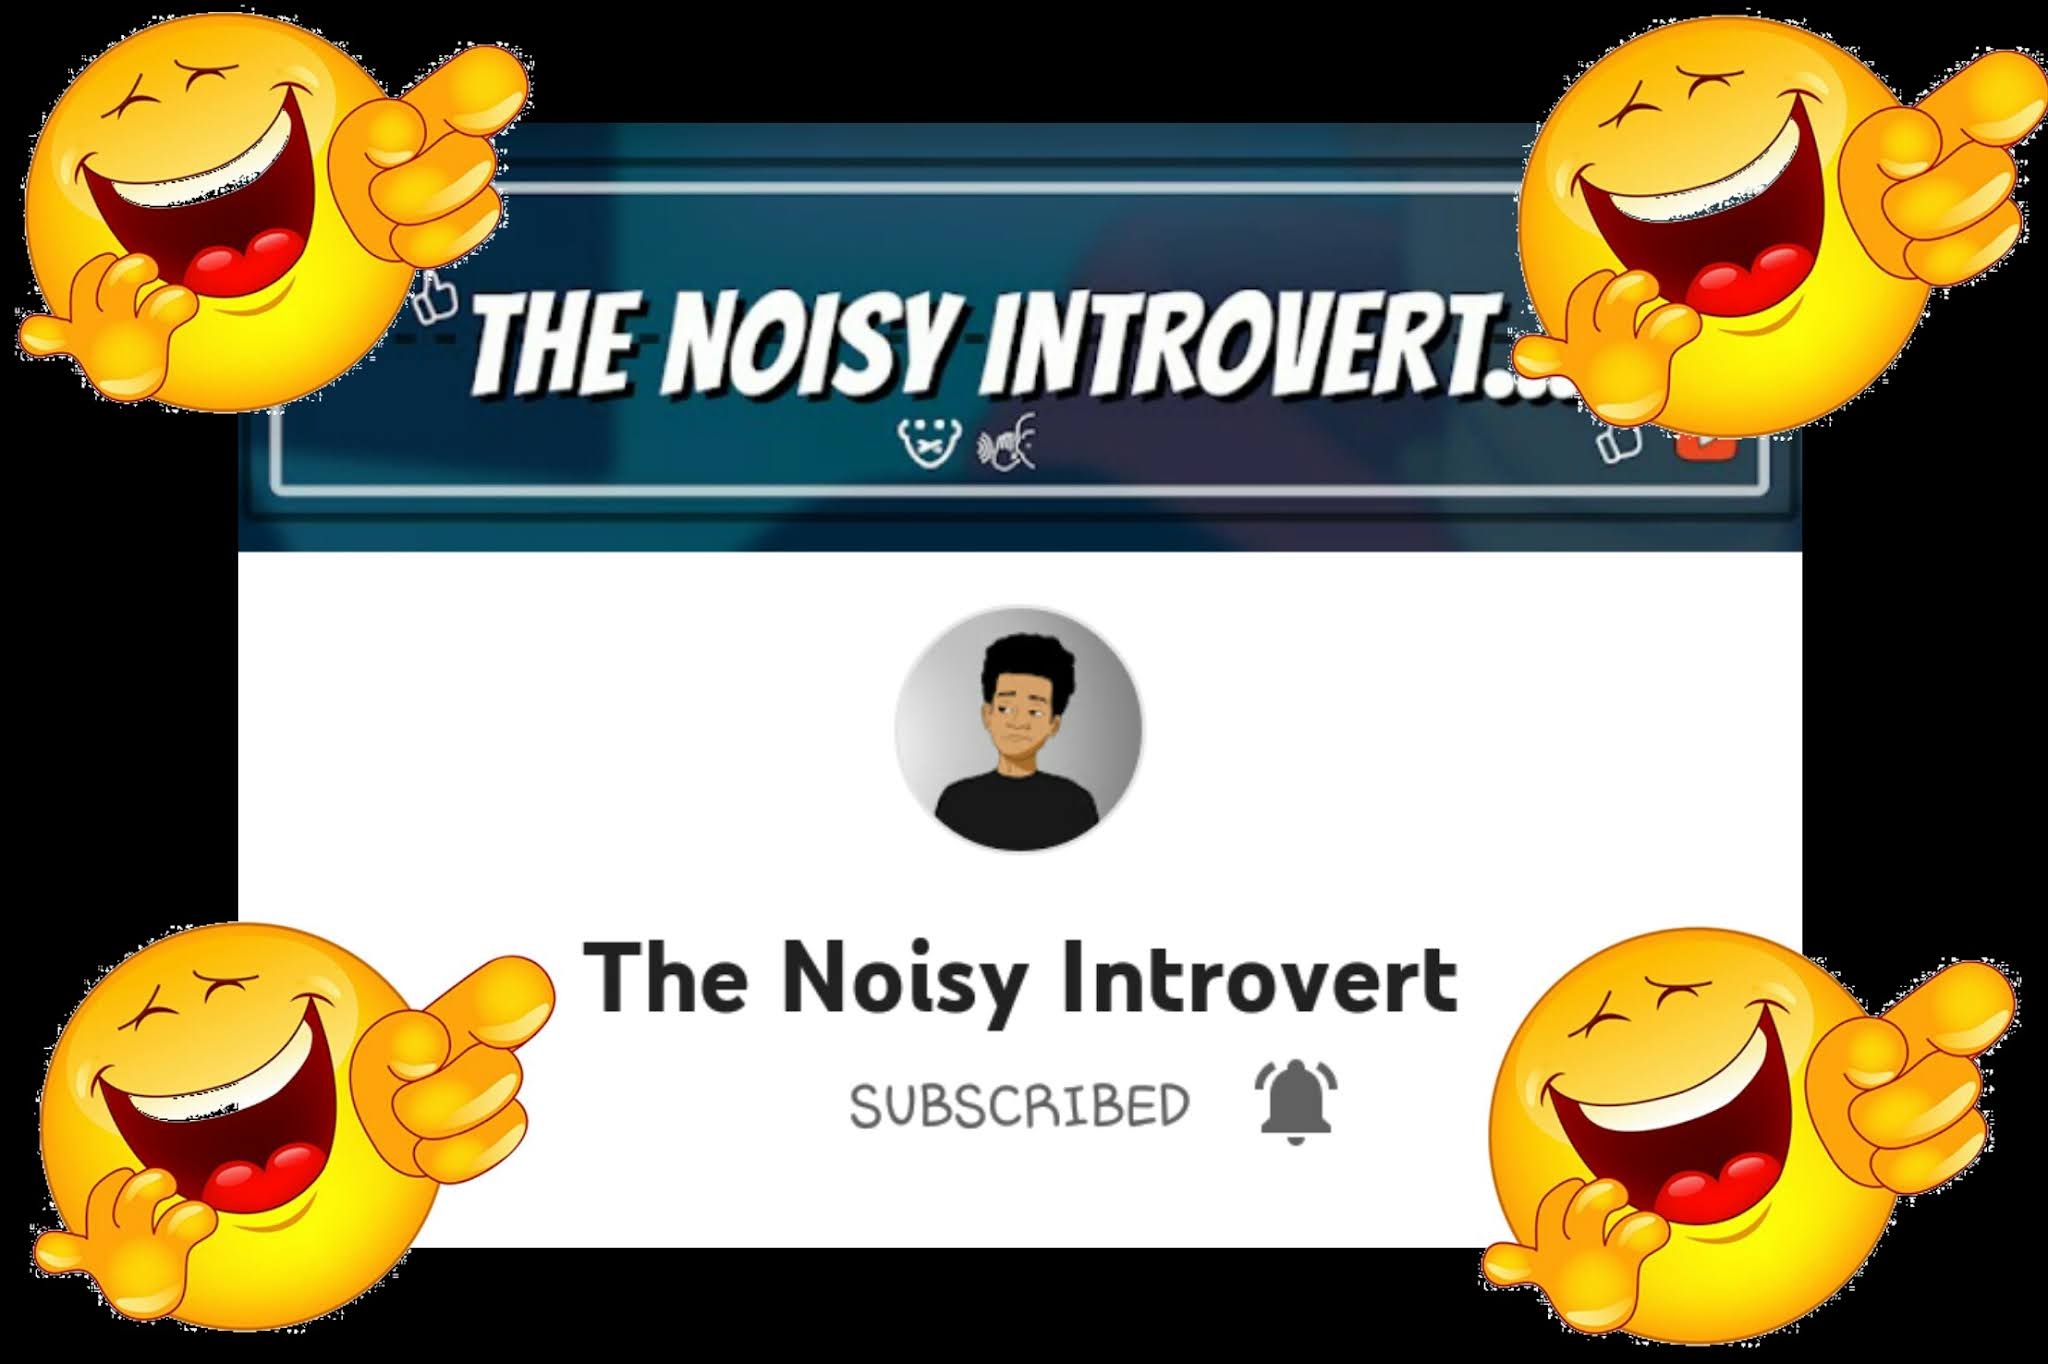 The Noisy Introvert